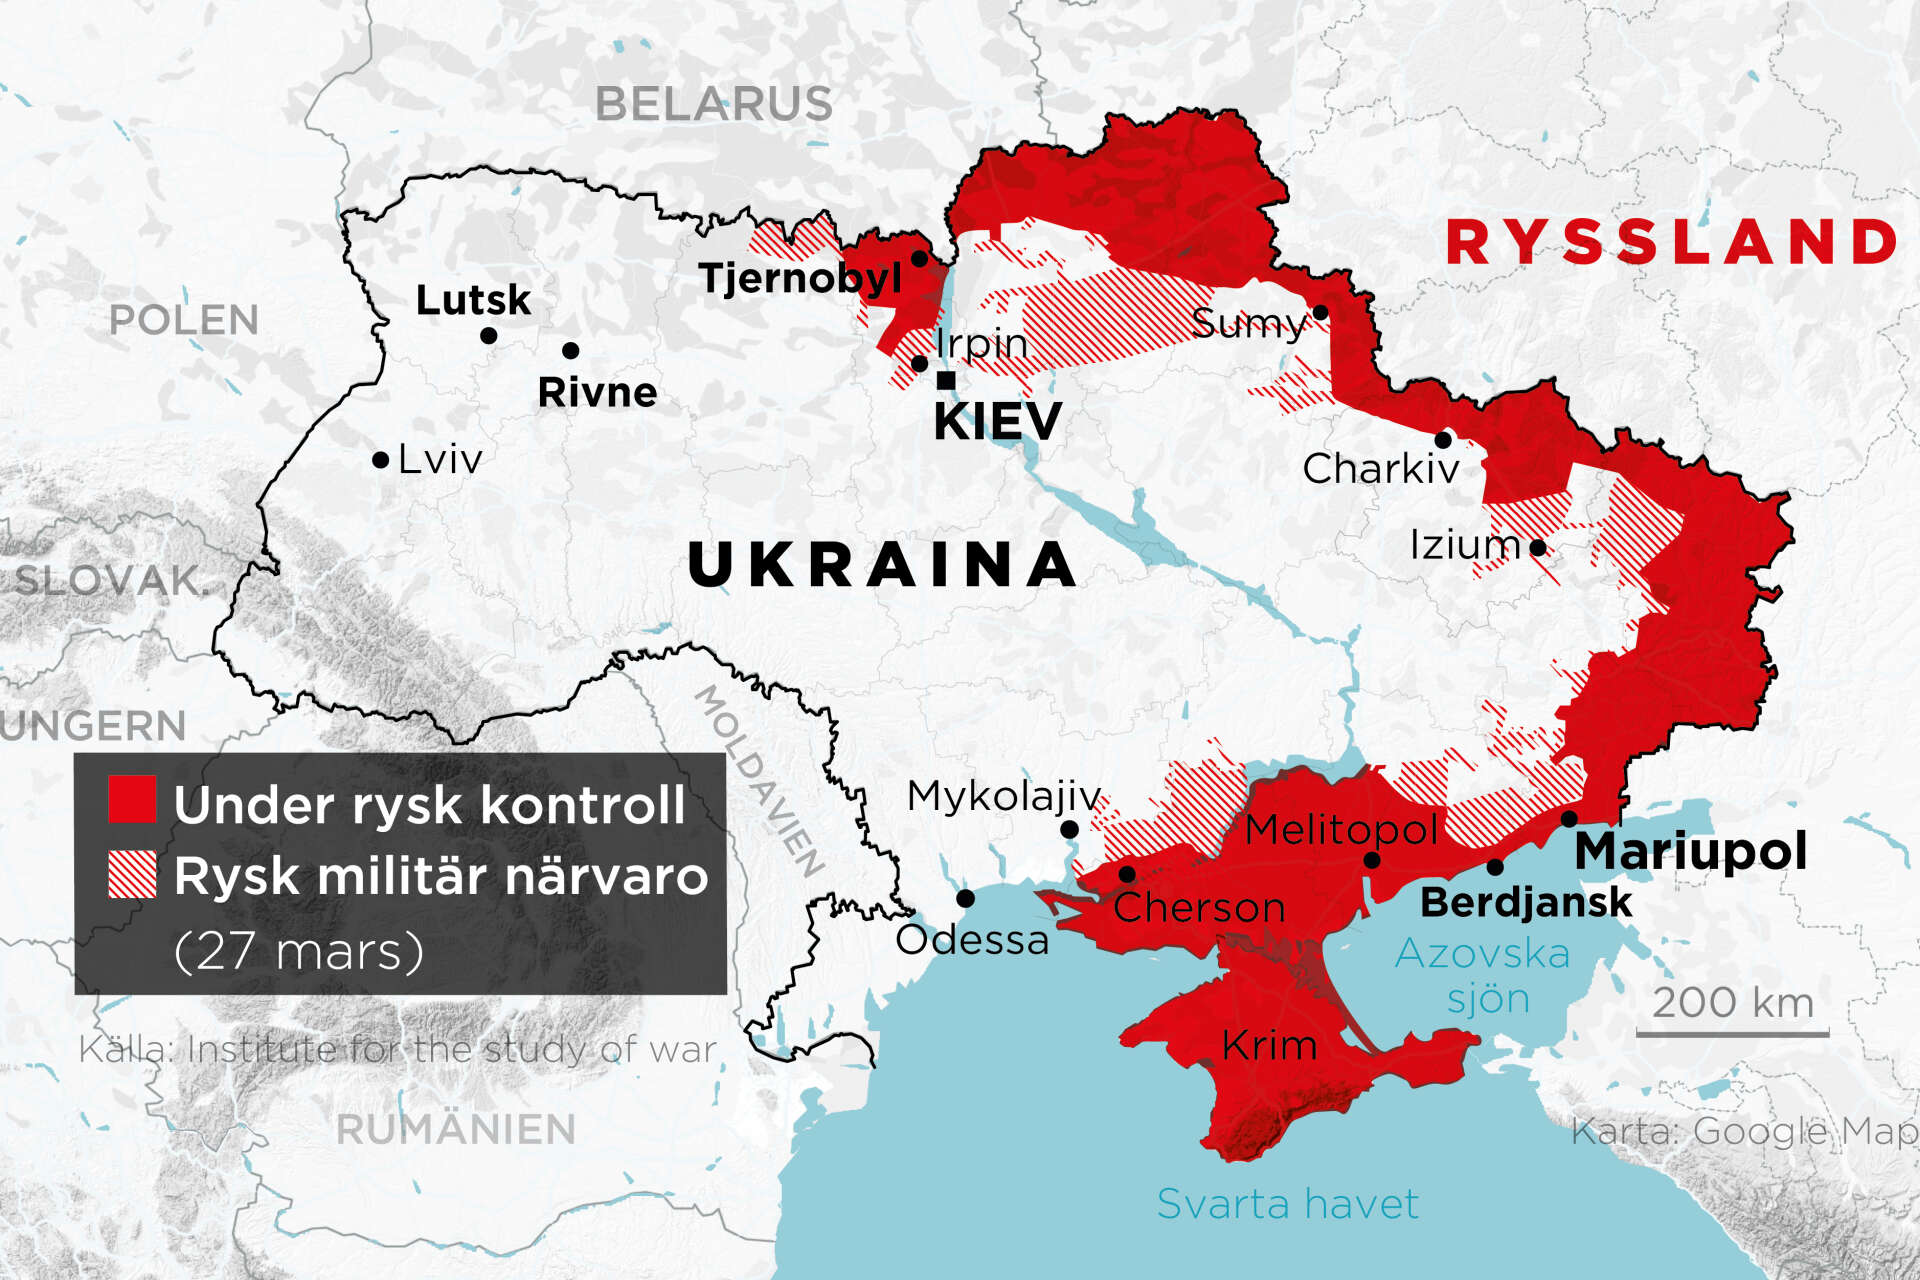 Områden under rysk kontroll samt områden med rysk militär närvaro, 24 februari–27 mars.